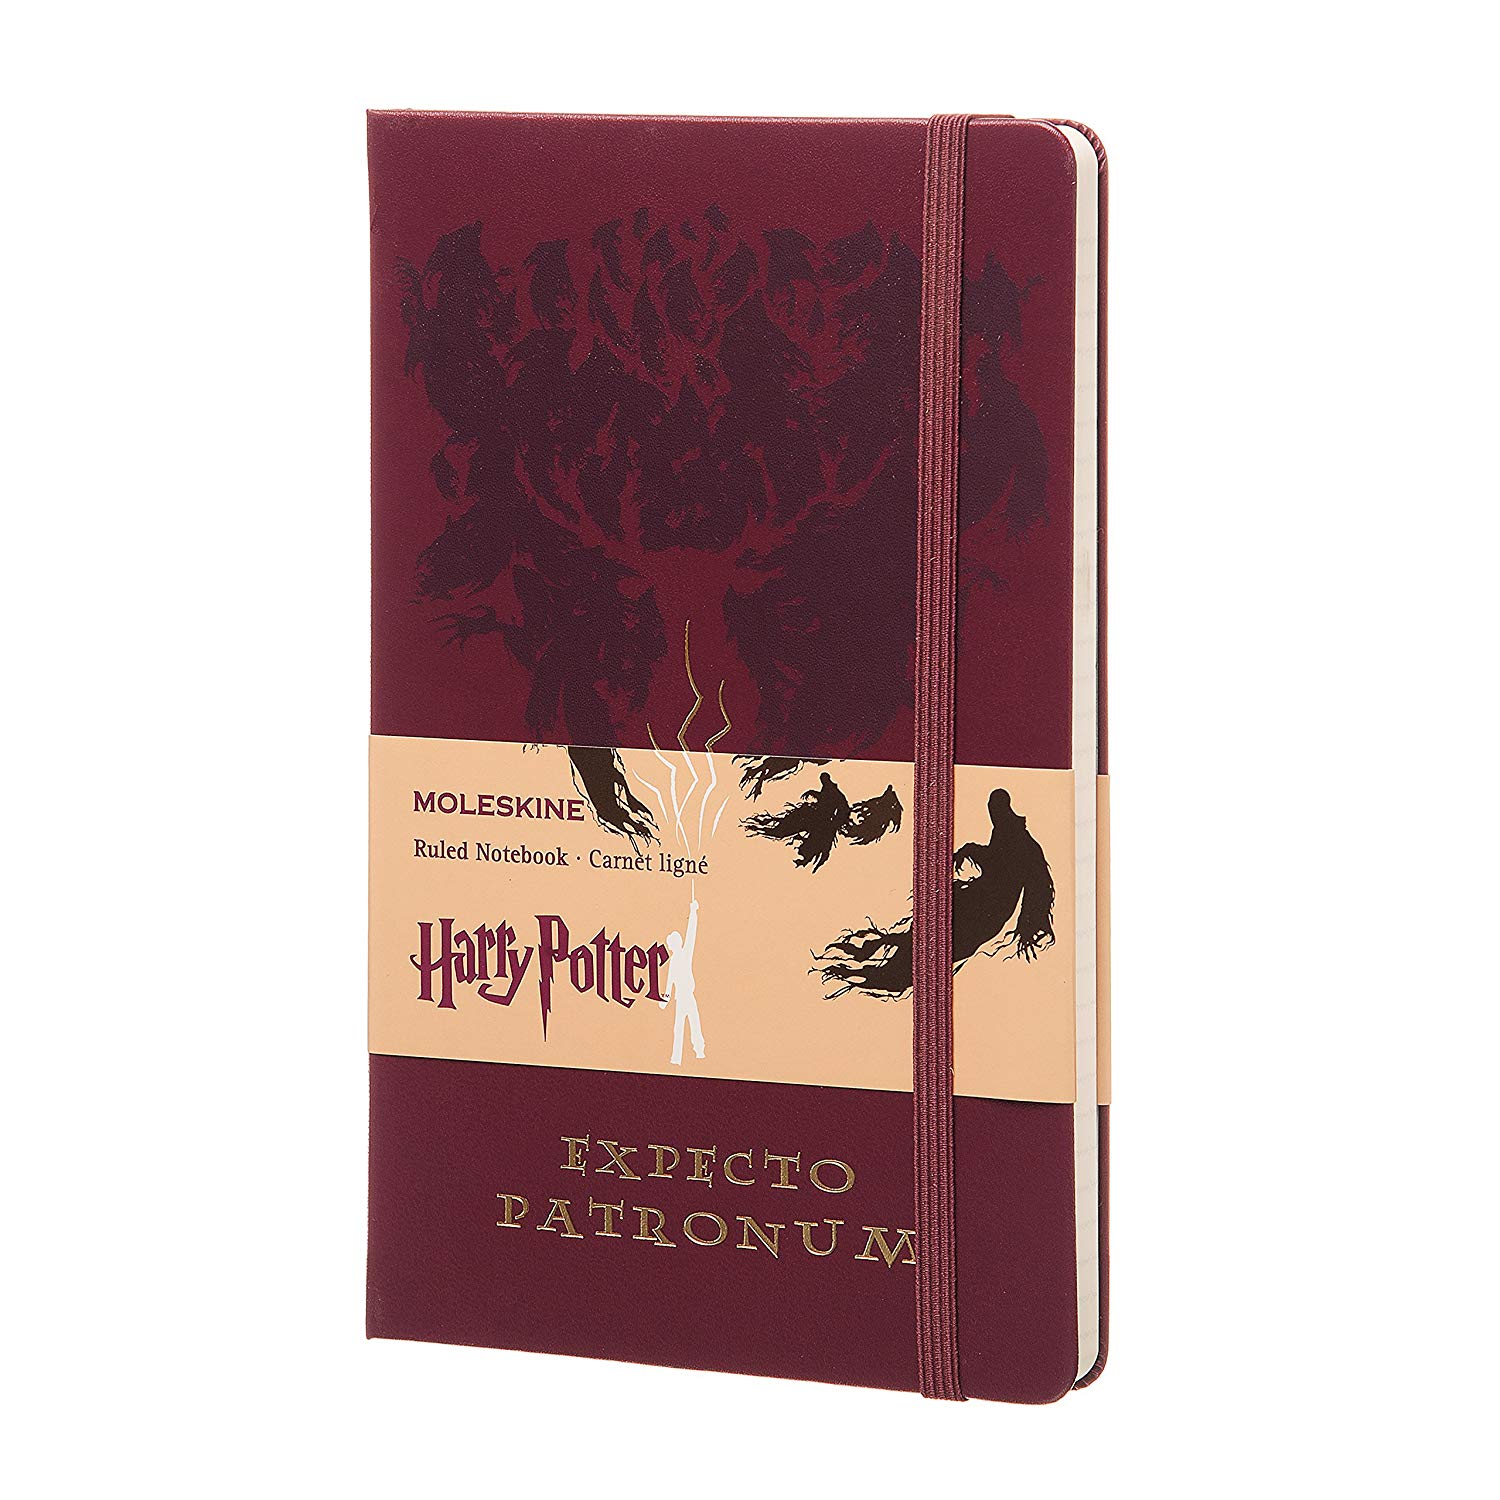 Caderno Moleskine, Edição Limitada Harry Potter, Expecto Patronum, Pautado, Grande